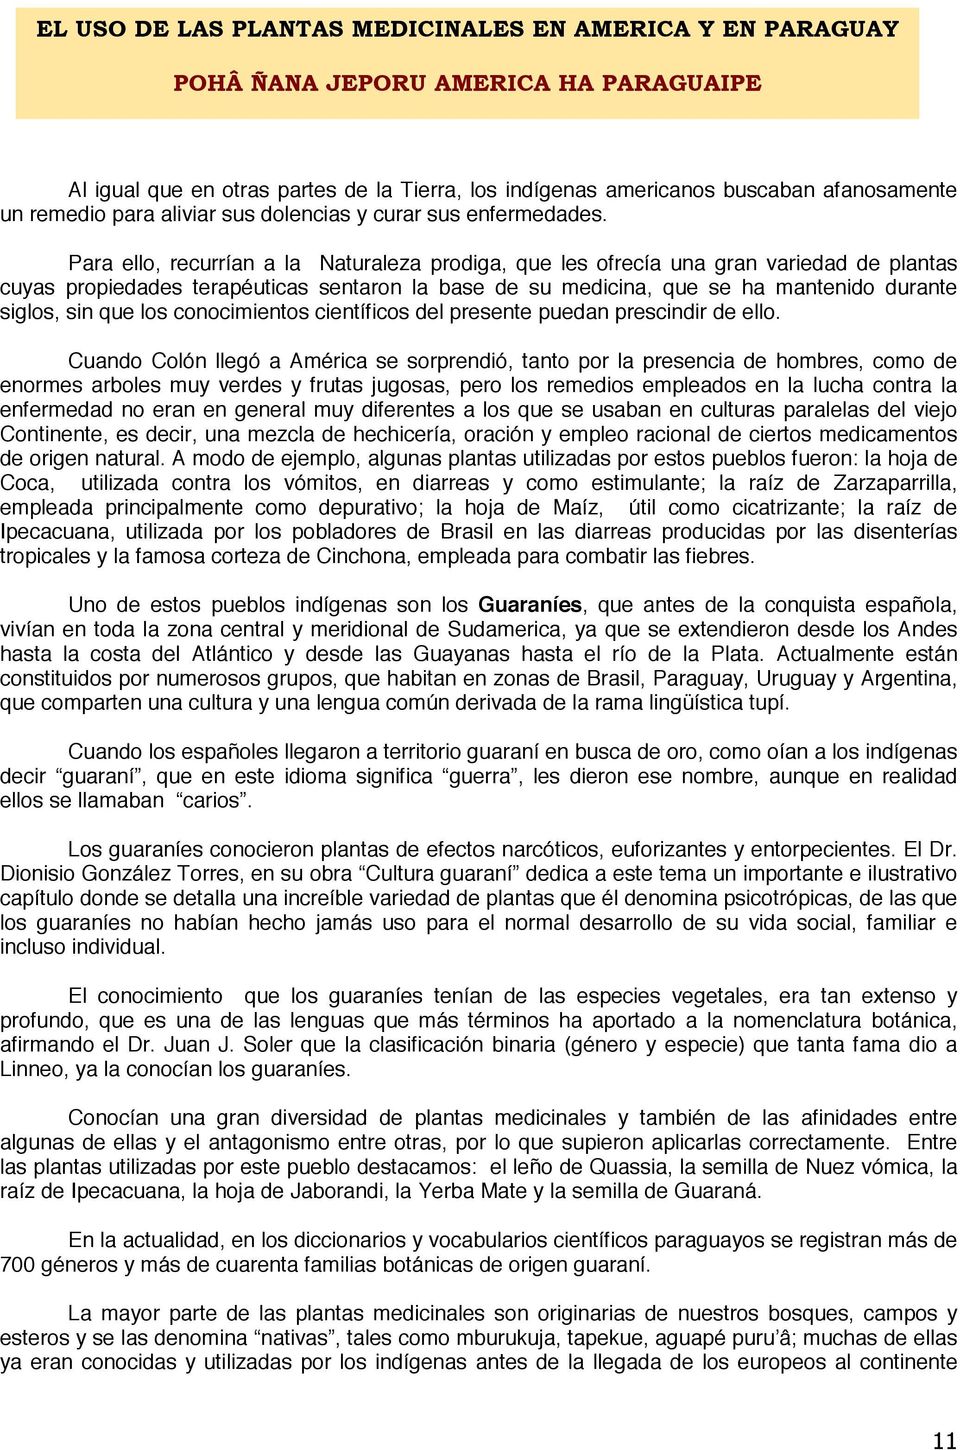 Manual De Uso De Hierbas Medicinales Del Paraguay Pdf Descargar